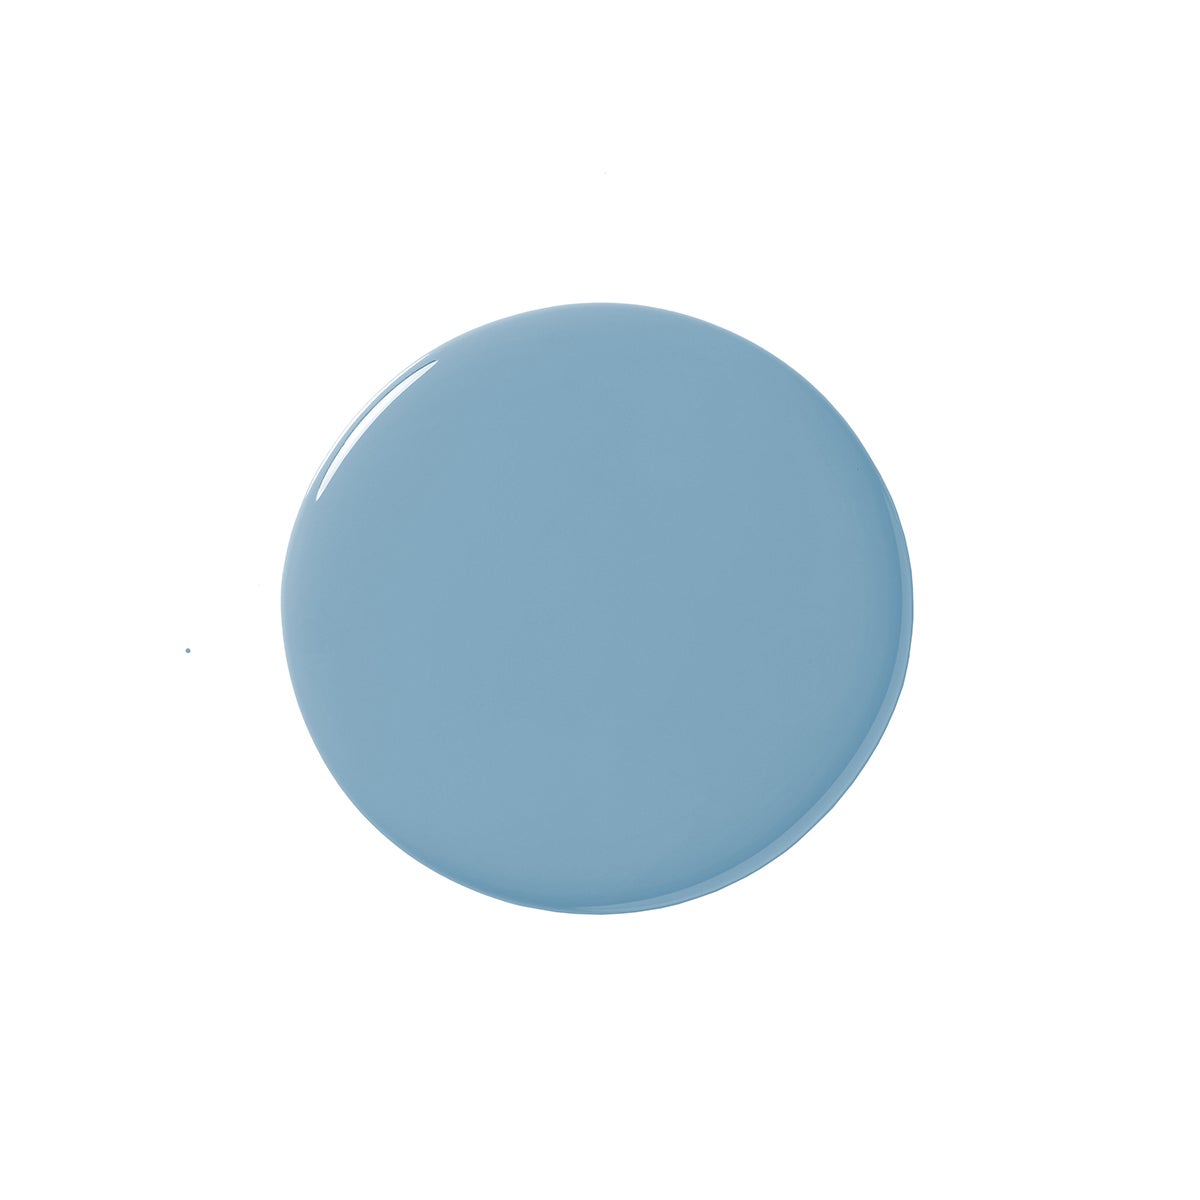 soft blue paint blob